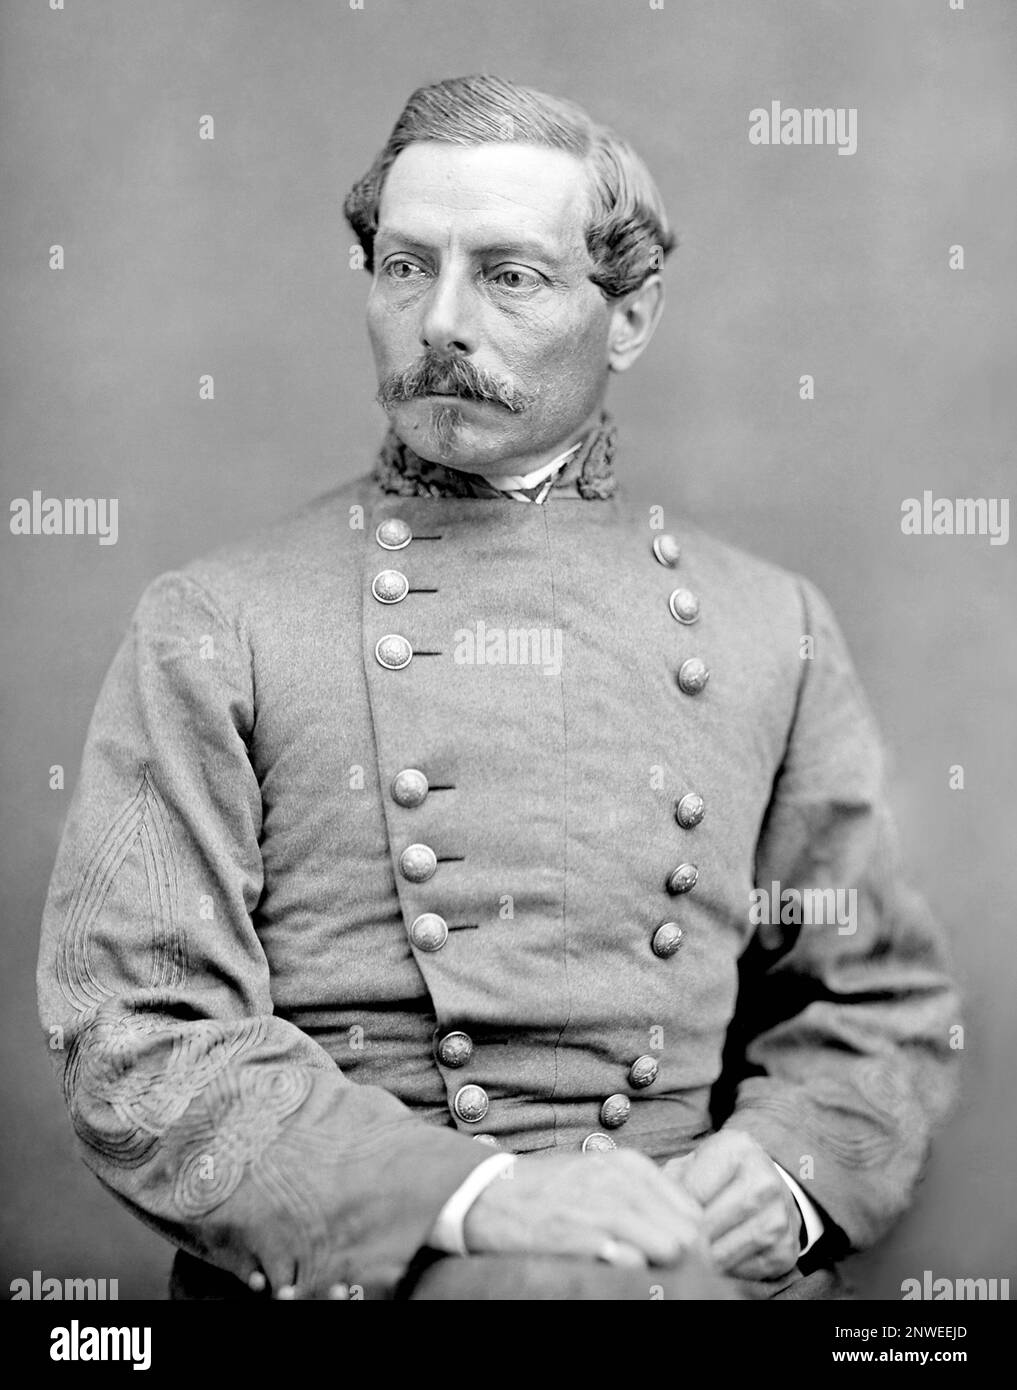 P. G. T. Beauregard, Pierre Gustave Toutant-Beauregard (1818 - 1893) Officier général confédéré qui a lancé la guerre civile américaine en dirigeant l'attaque contre le fort Sumter sur 12 avril 1861. Banque D'Images